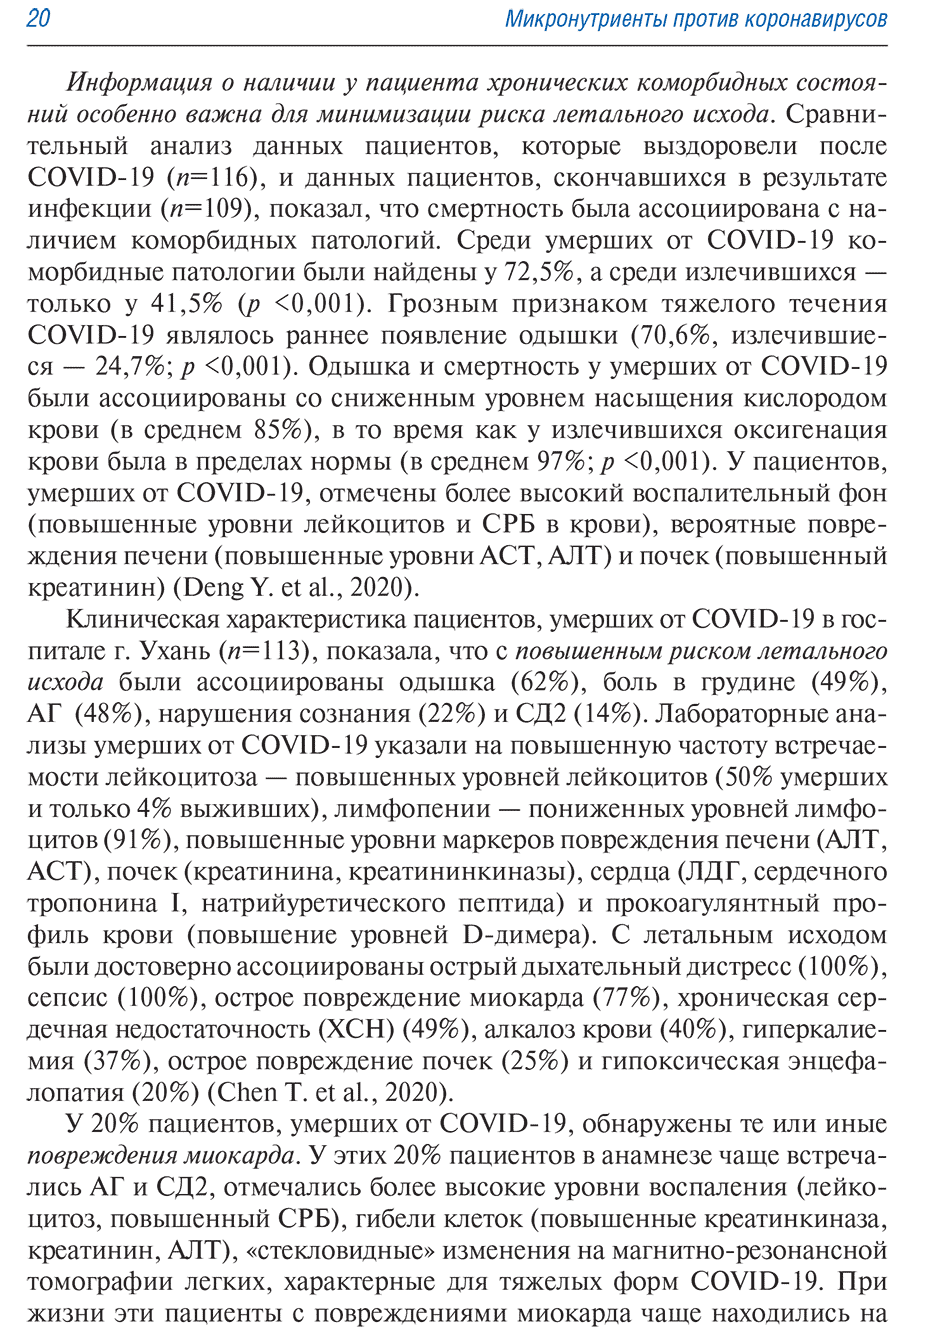 Пример страницы из книги "Микронутриенты против коронавирусов" - Торшин И. Ю., Громова О. А.